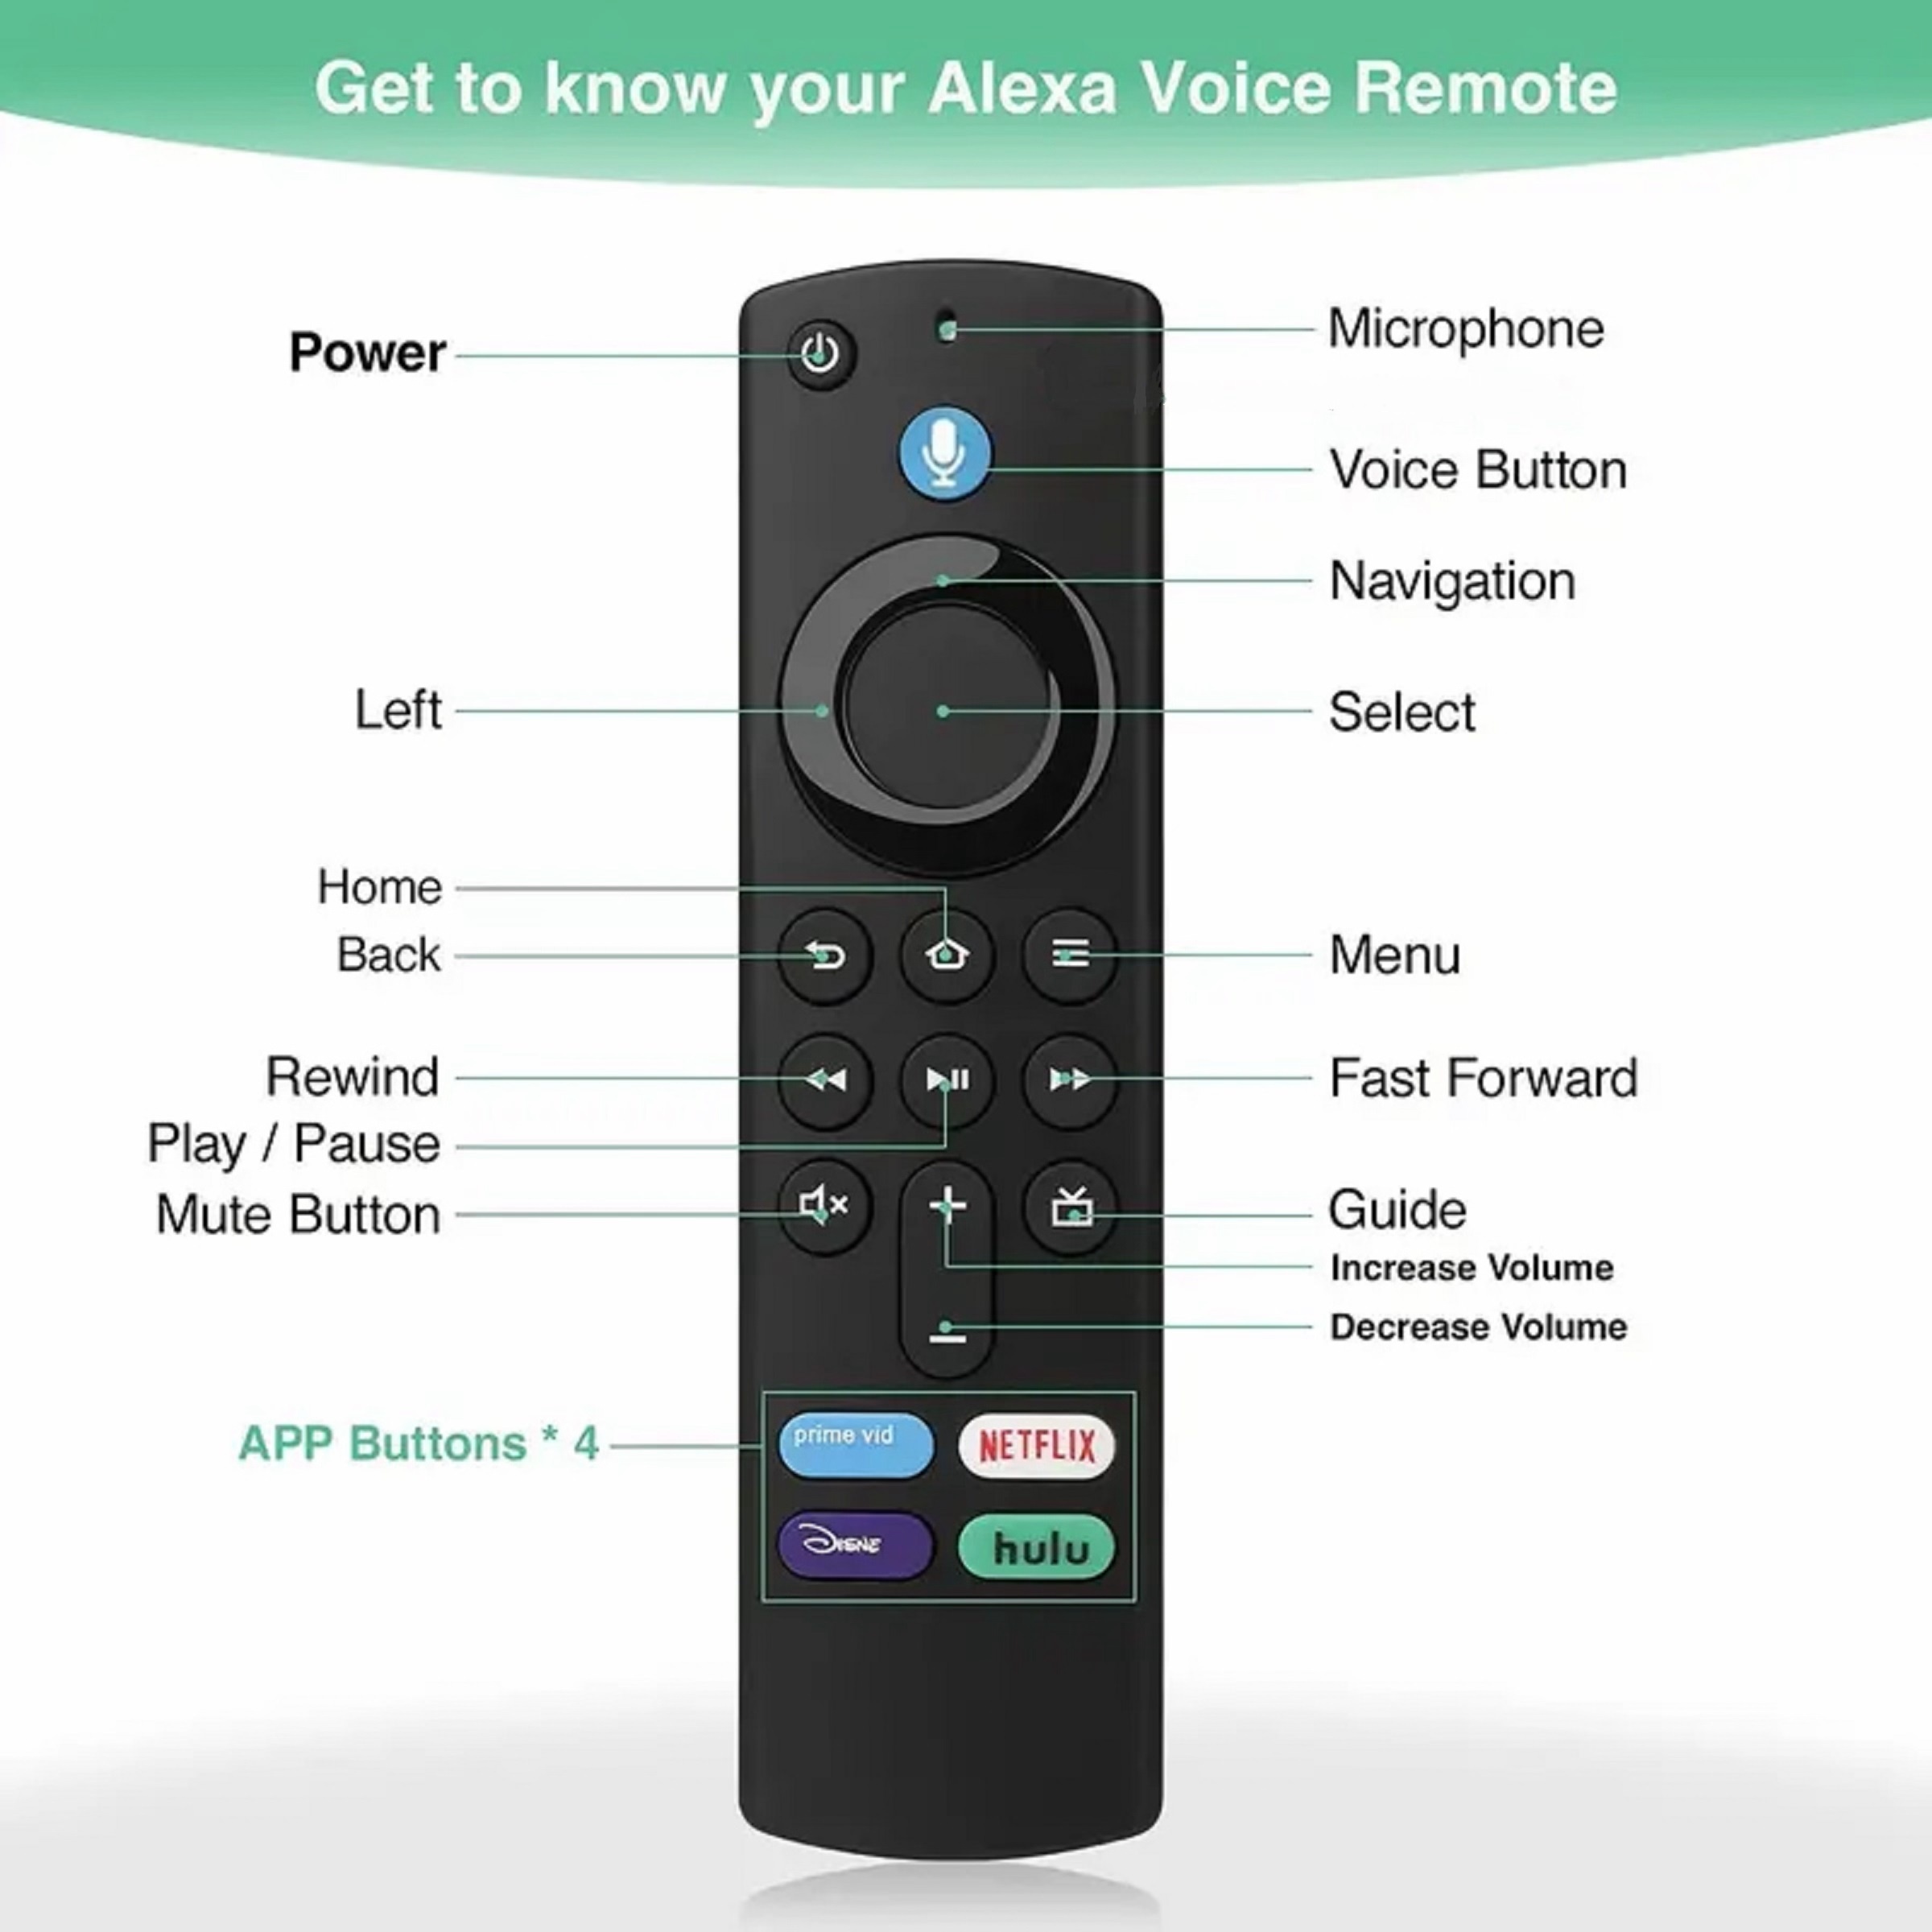  Oferta por tiempo limitado:  Fire TV Stick con control remoto  por voz Alexa 